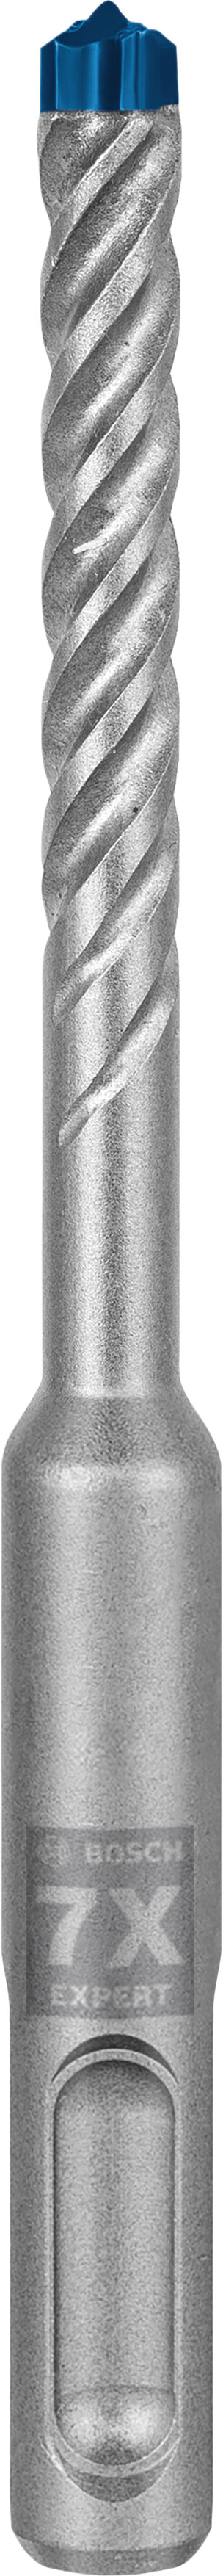 Bosch Professional SDS Plus-7X Hammer Drill Bit - 6.5mm x 50mm x 115mm